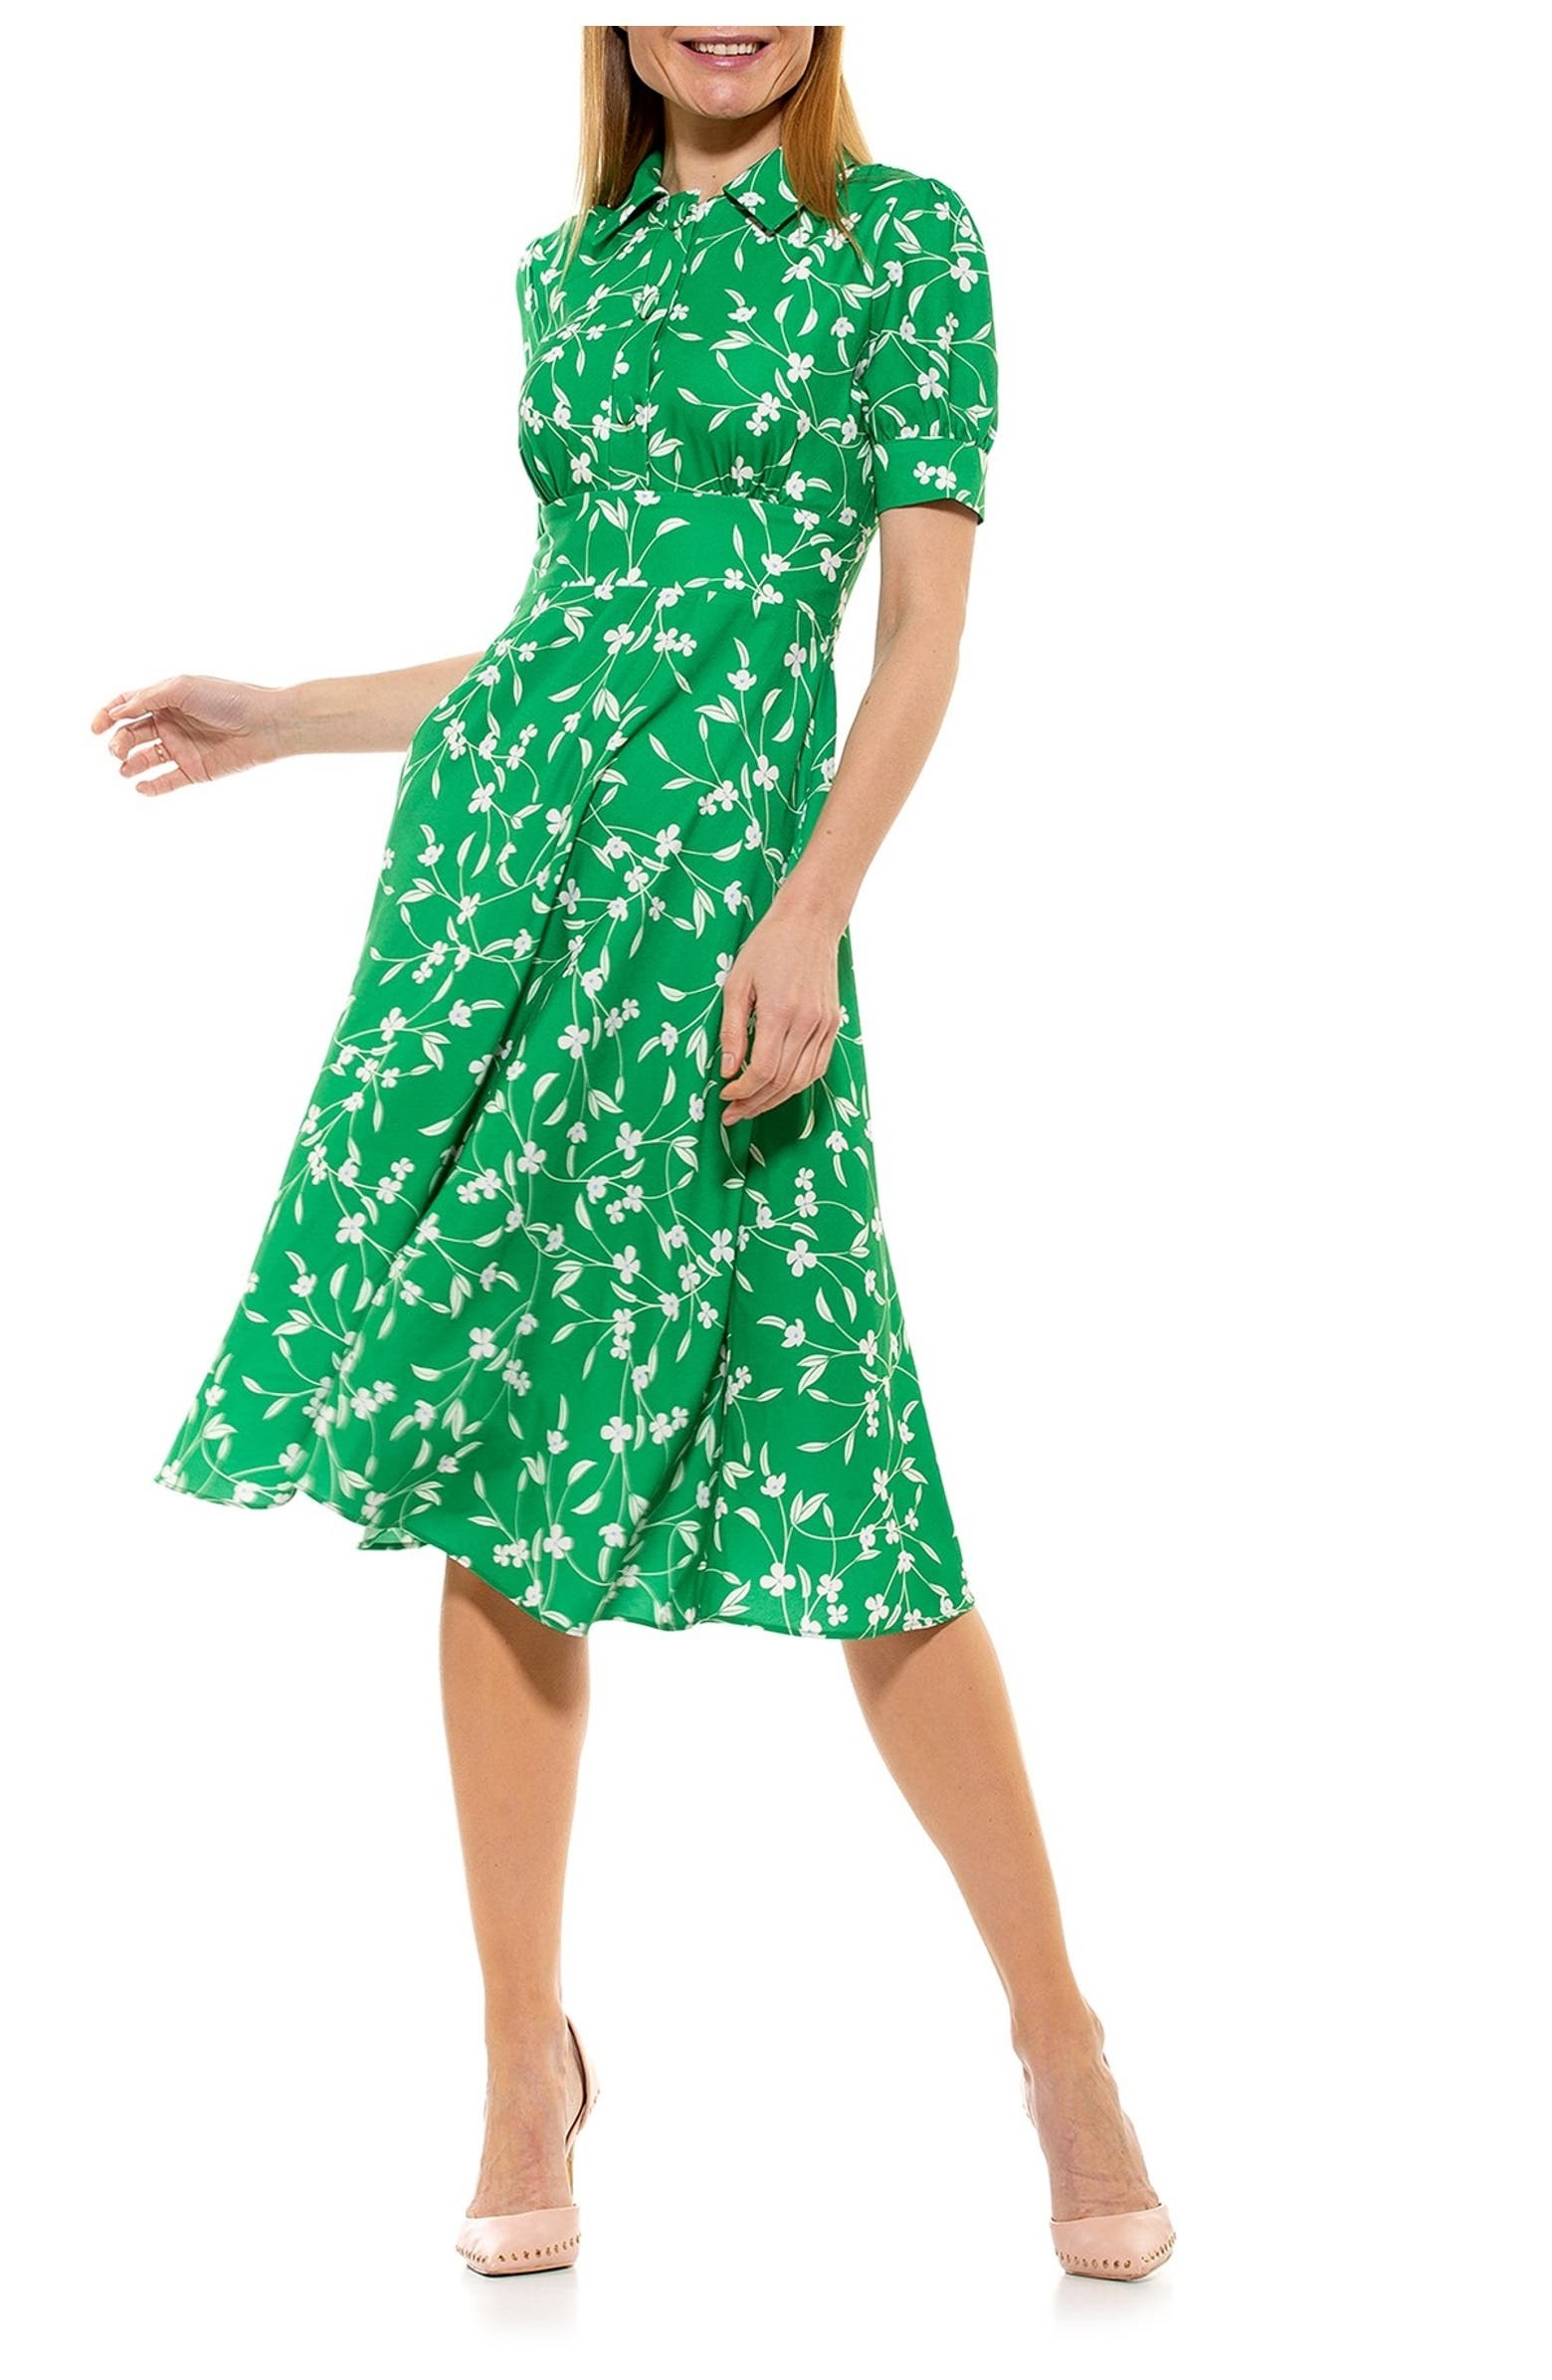 A model wearing the dress in Green Ditzy